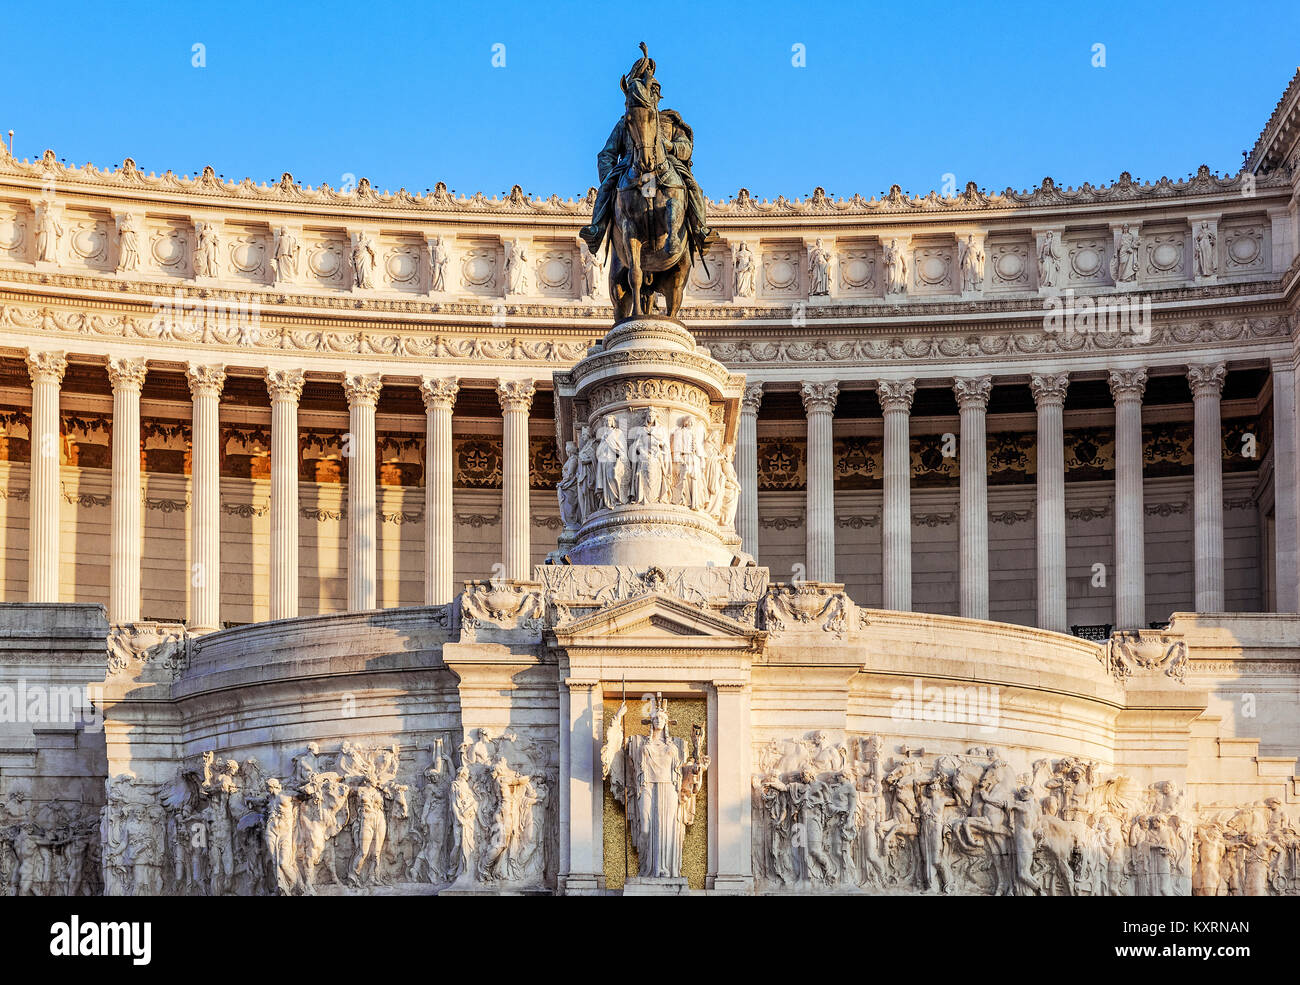 Monumento a Vittorio Emanuele II, Via del Teatro di Marcello, Rome, Italie. Banque D'Images